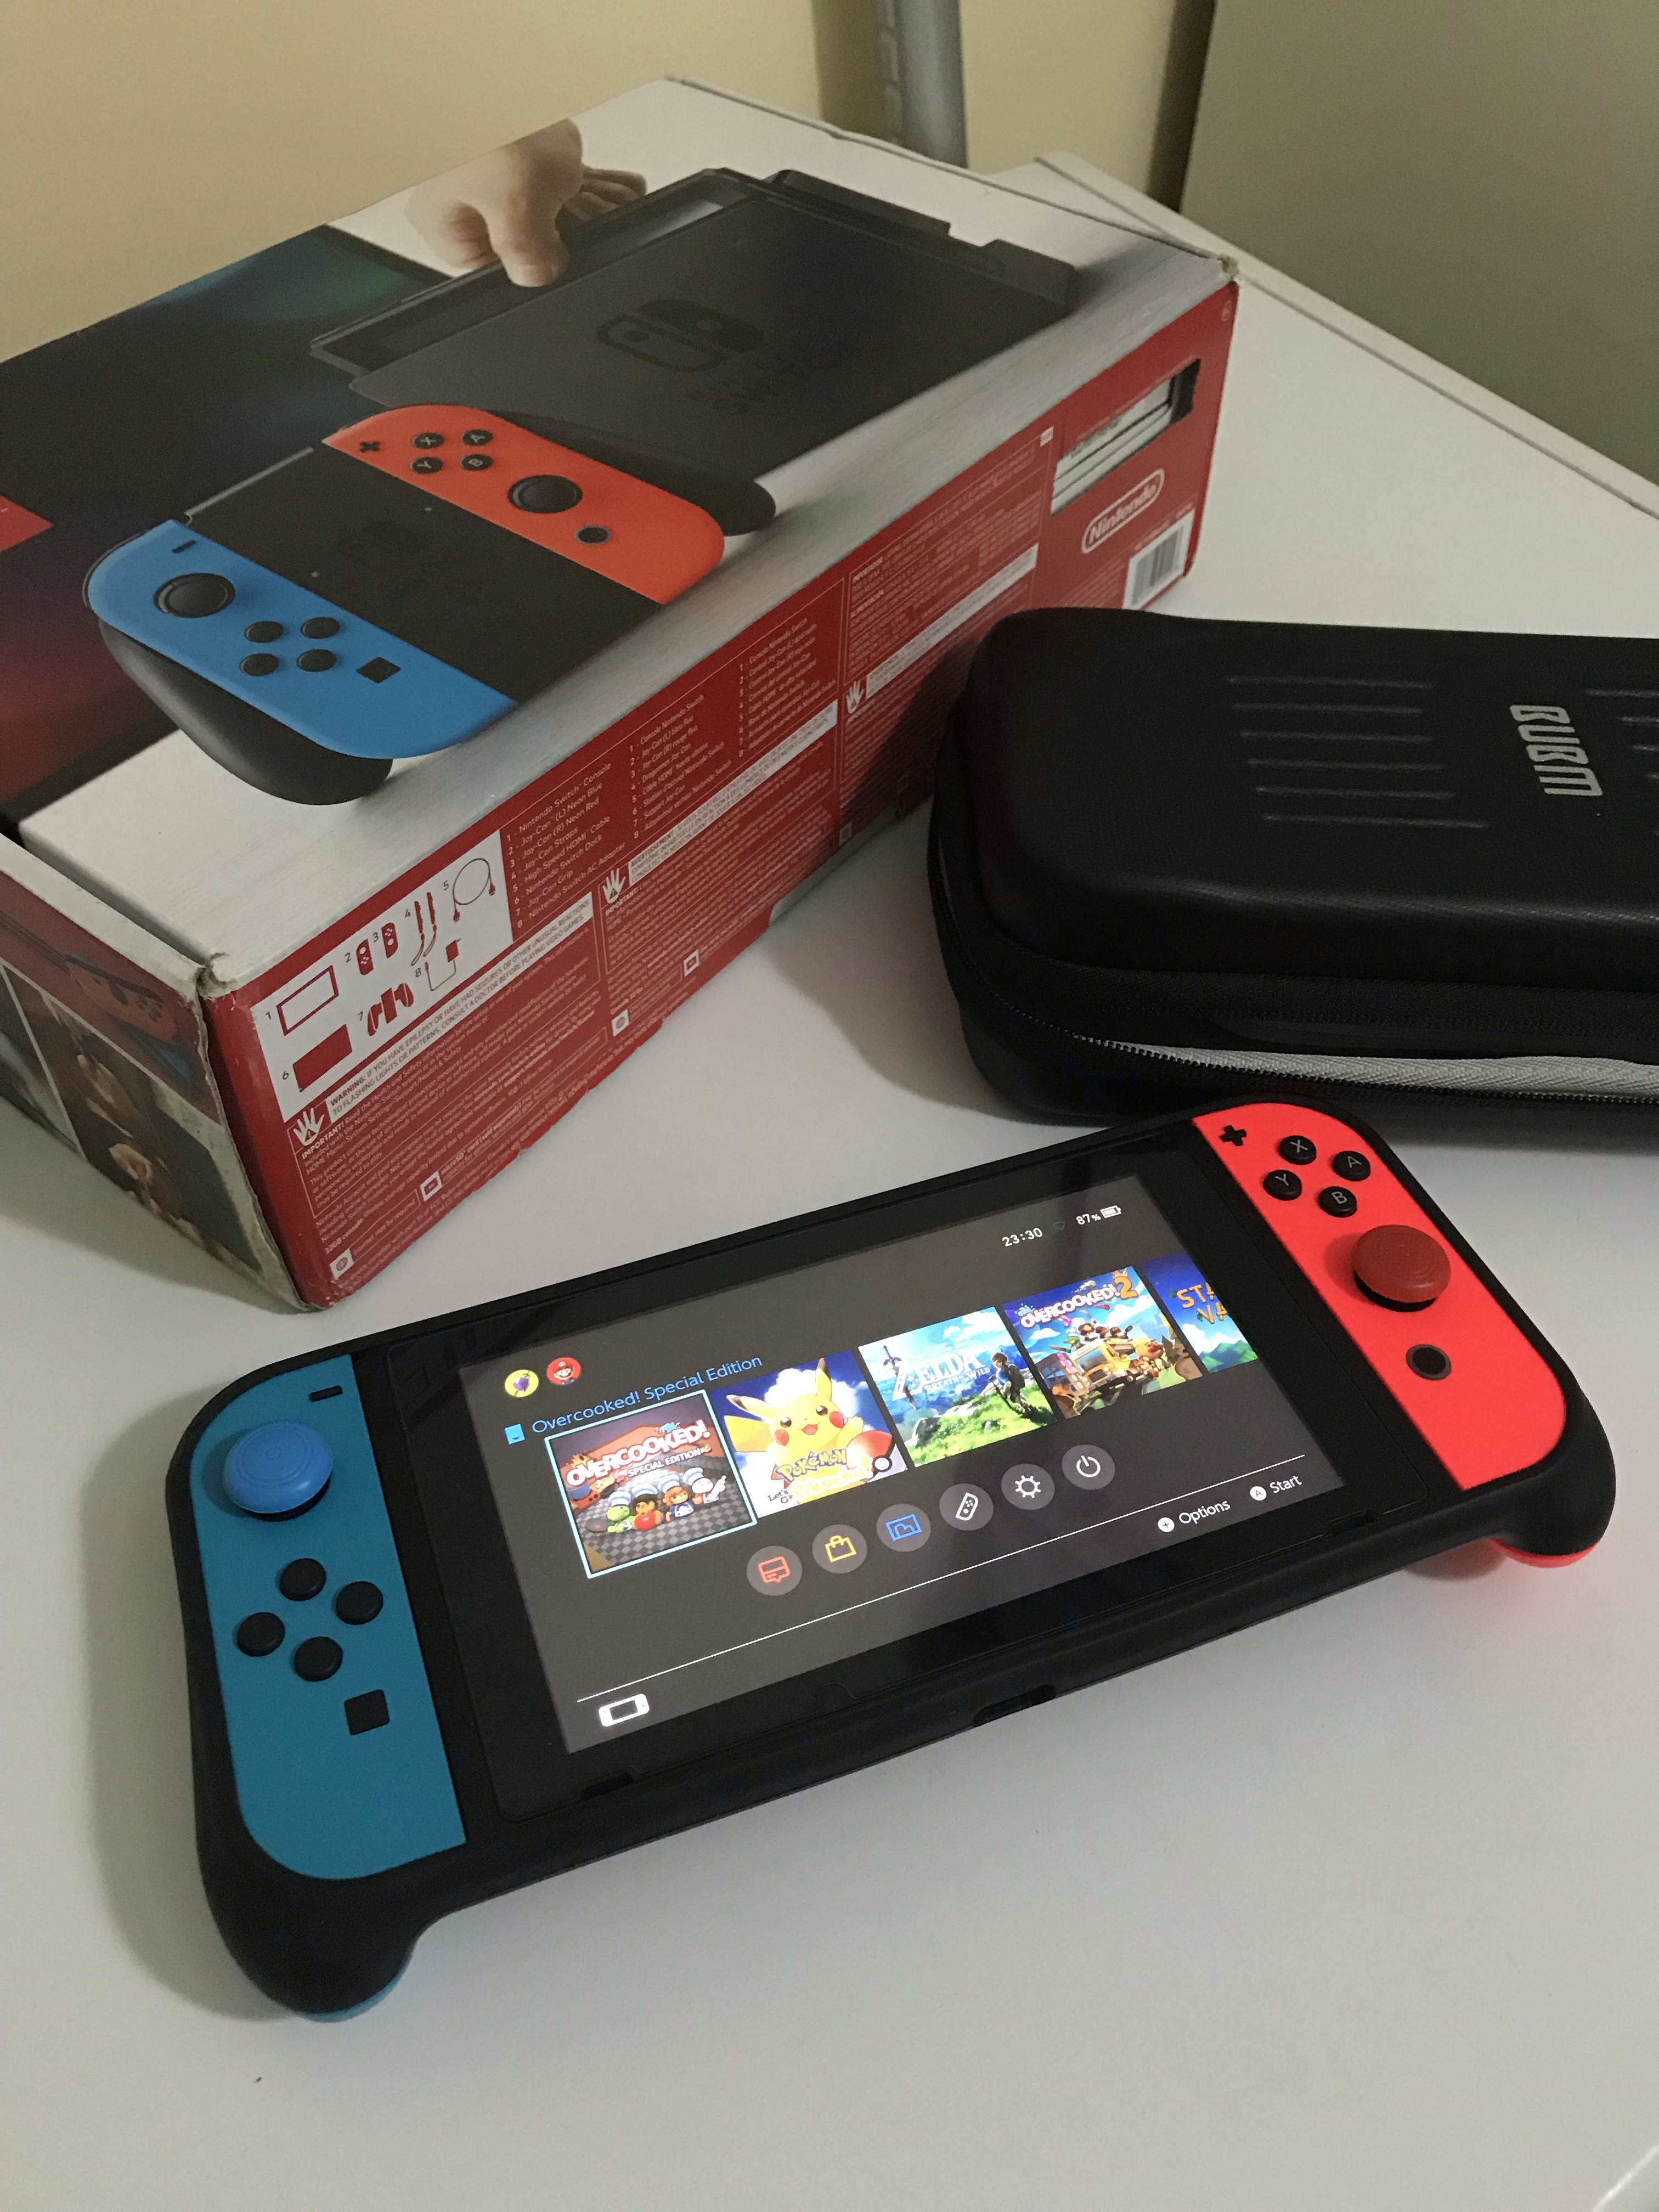 Satılık Nintendo Switch [SXOS Lisanslı Kırılmıştır] | DonanımHaber Forum